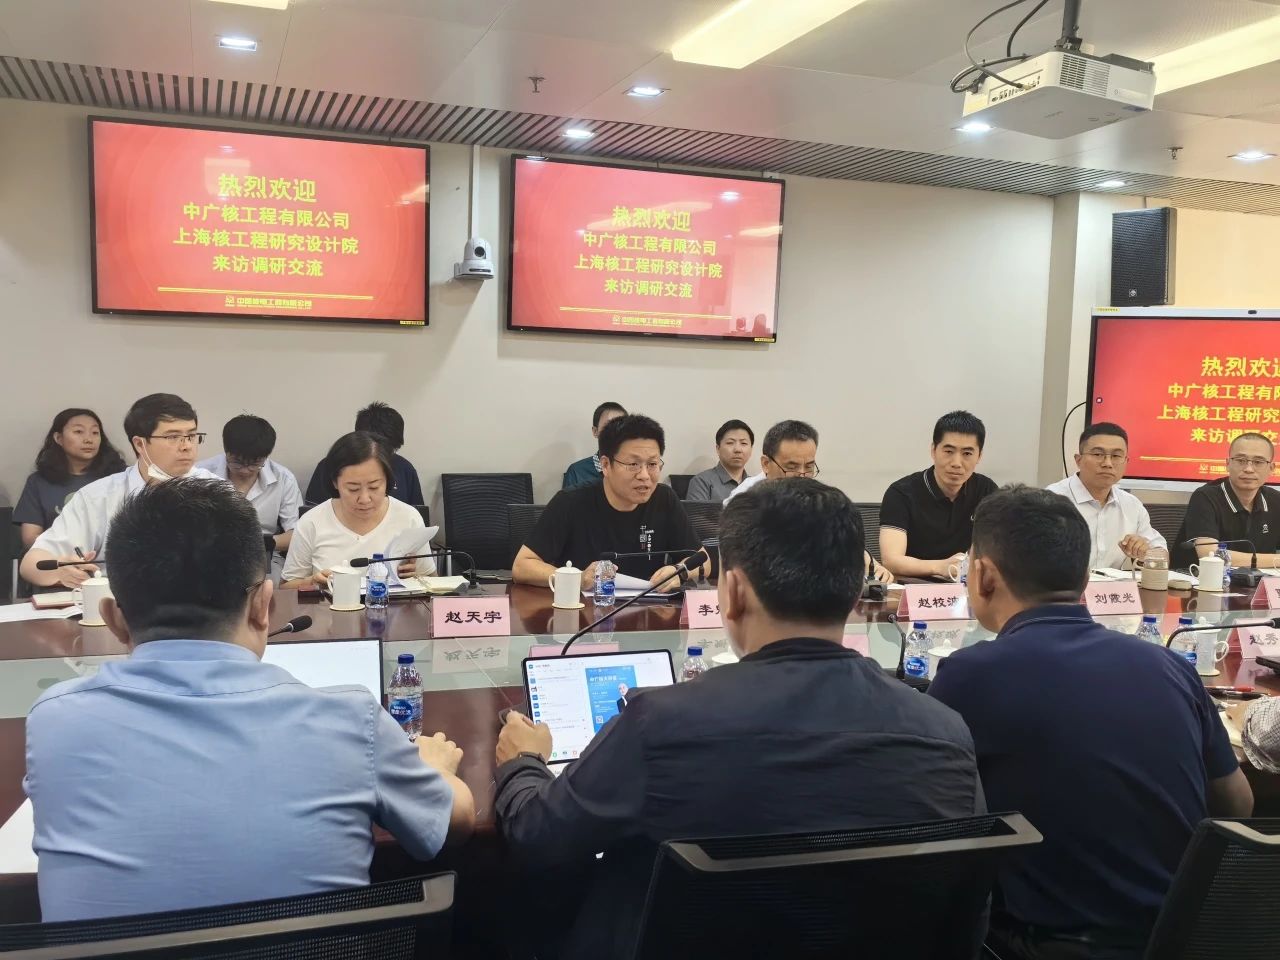 行业动态 中核工程,中广核工程,上海核工院核电建造管理部门召开首次